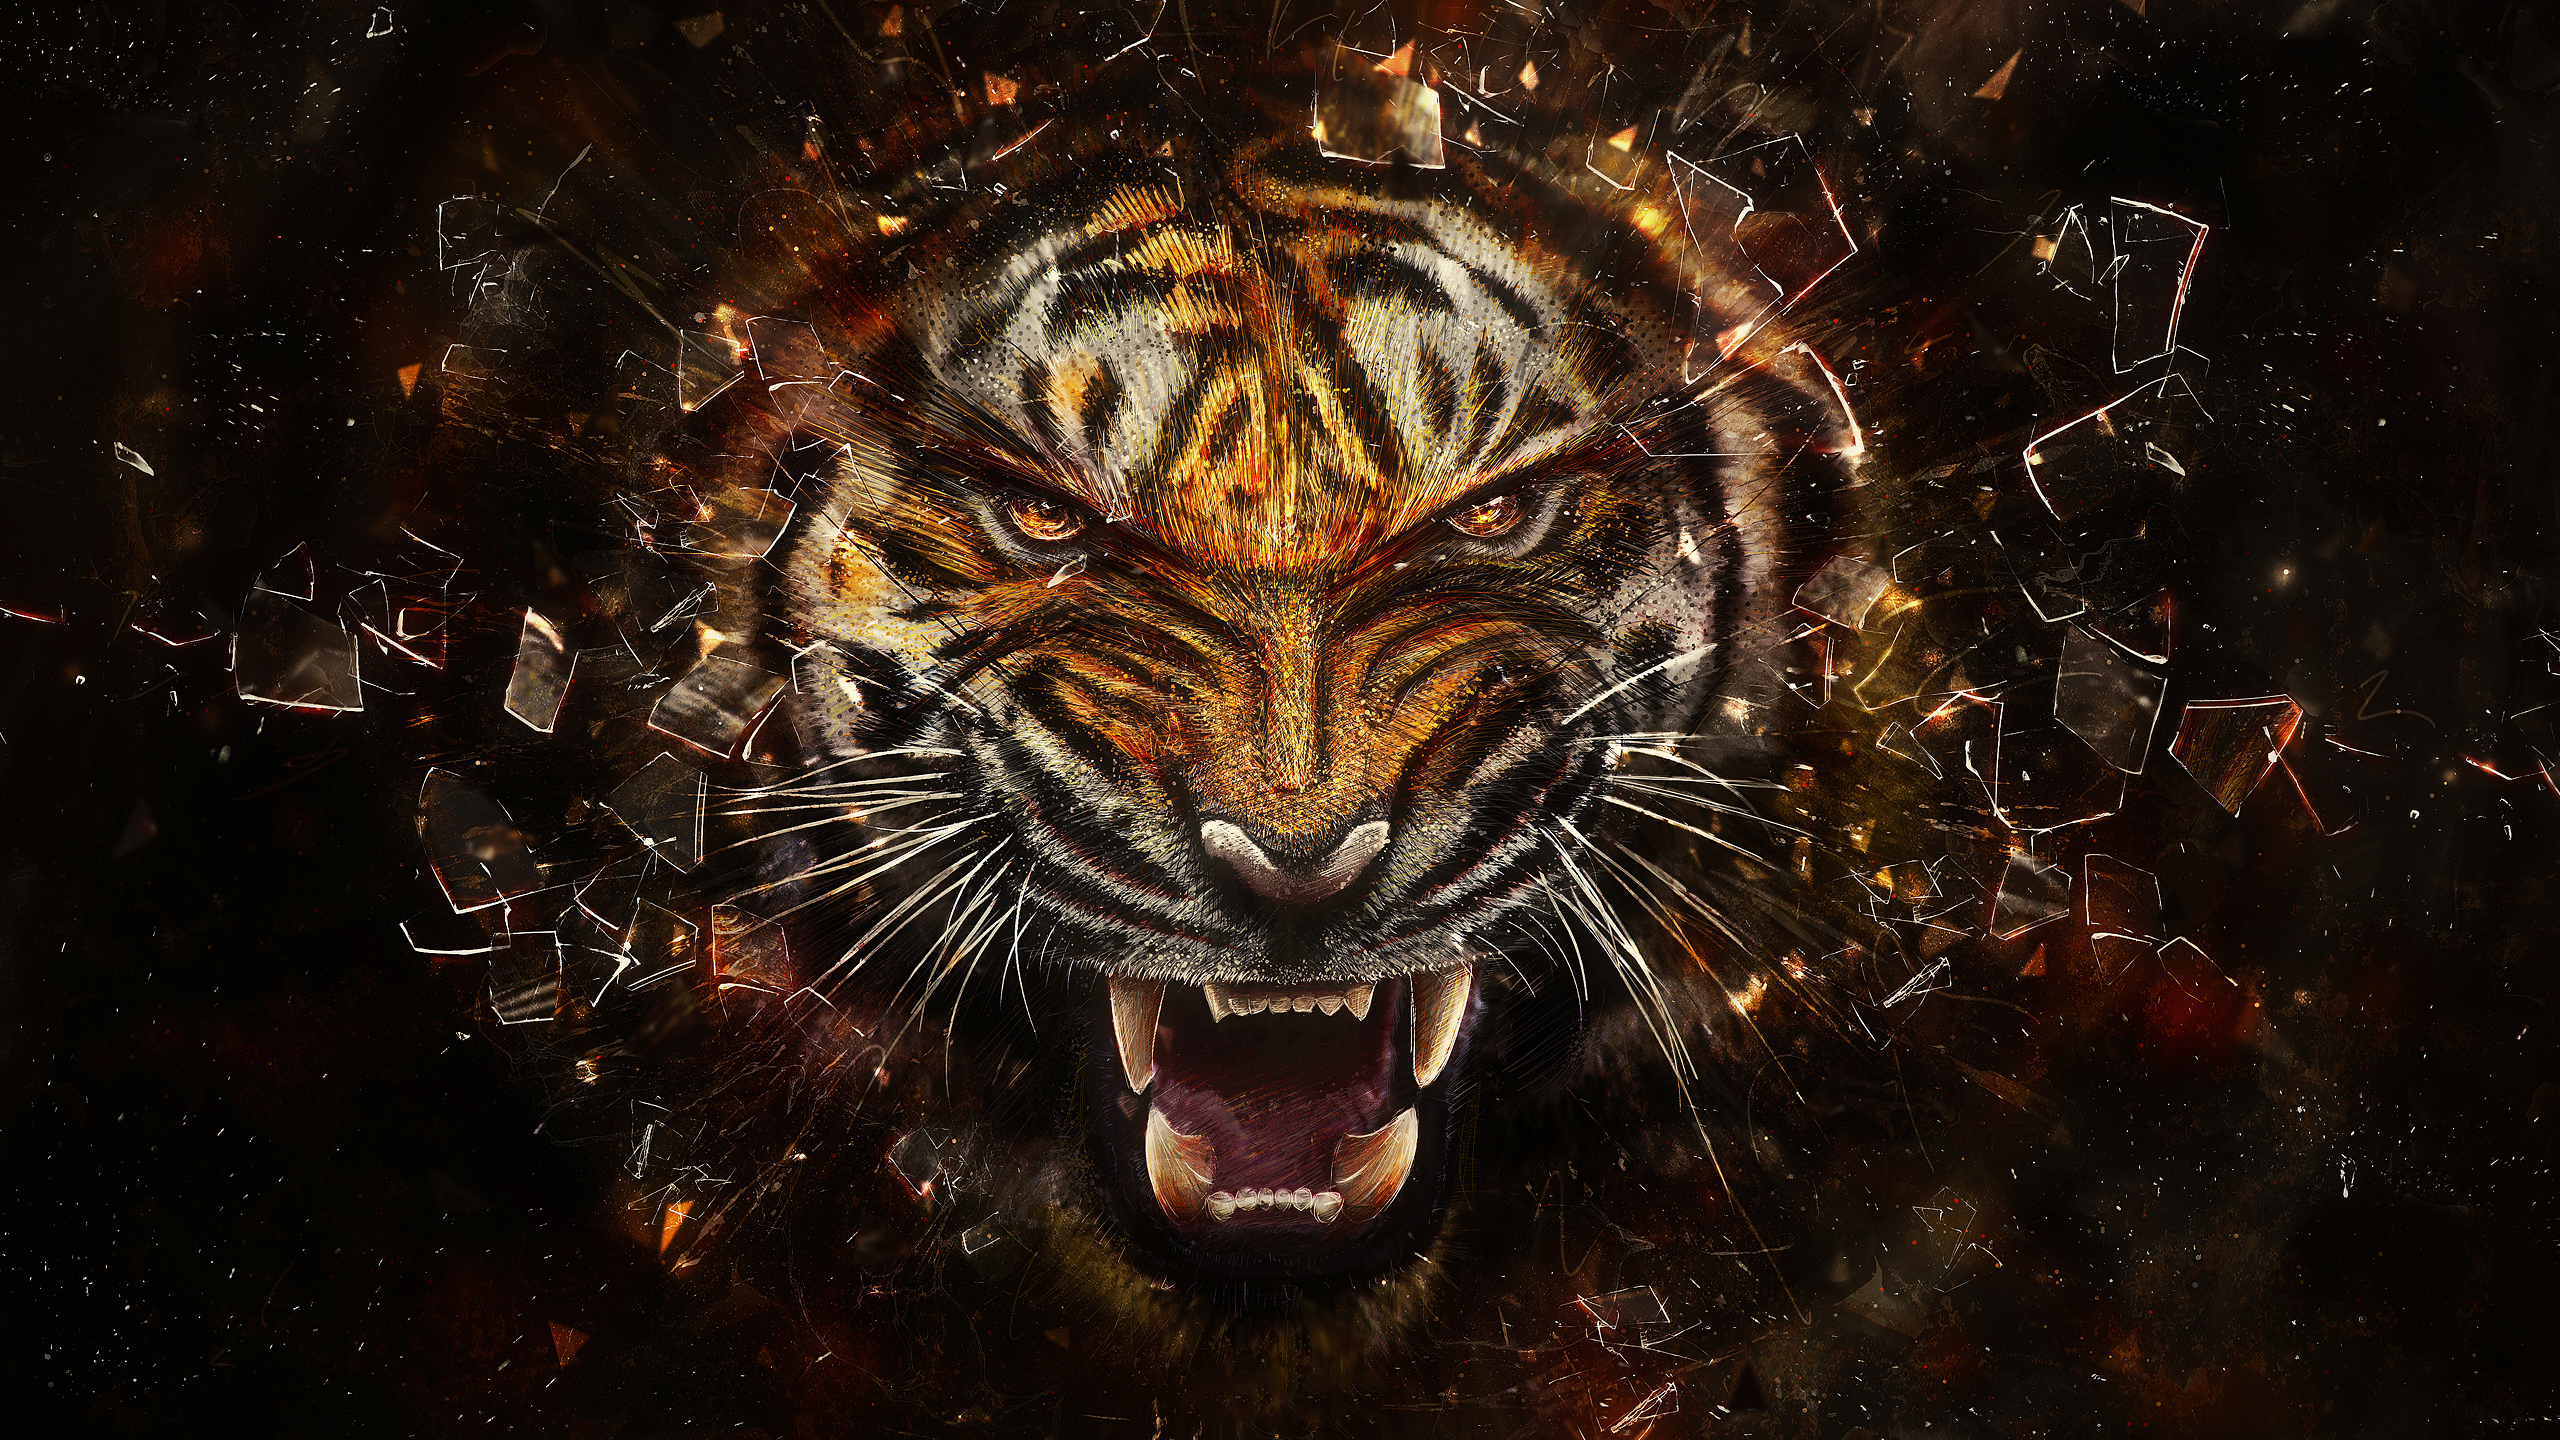 Скачать обои бесплатно Животные, Тигр, Художественный картинка на рабочий стол ПК